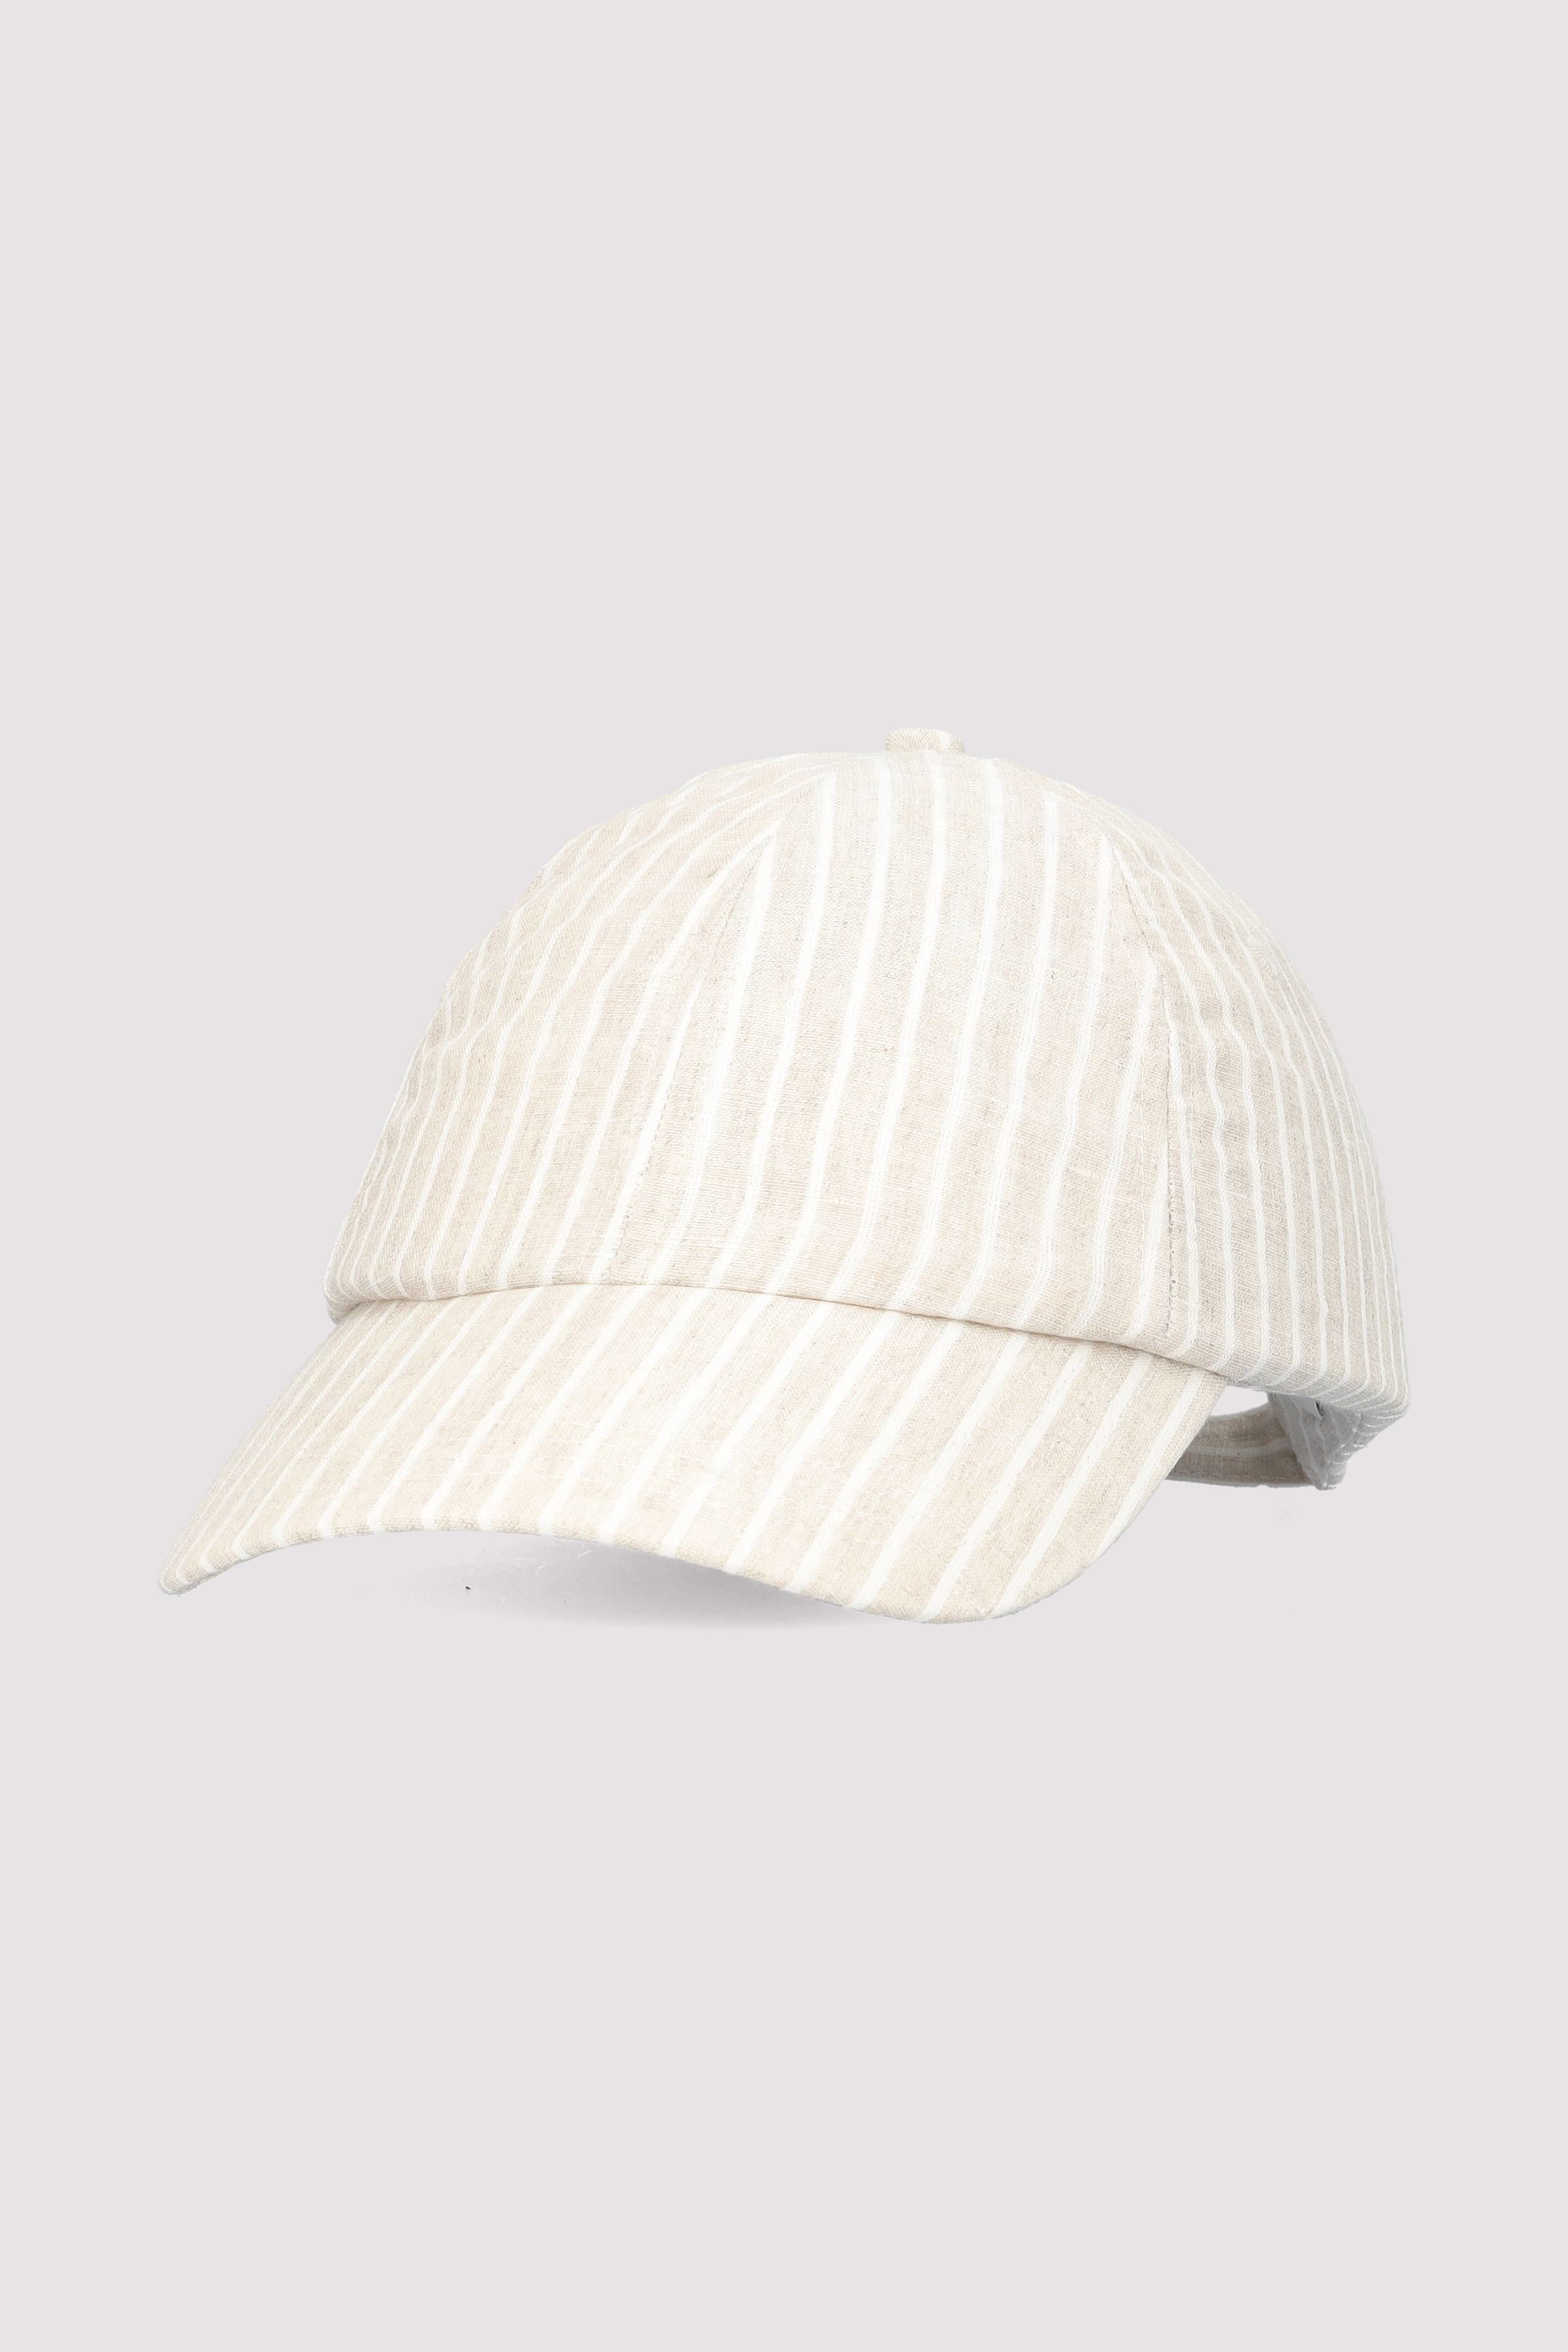 Cap, striped linen